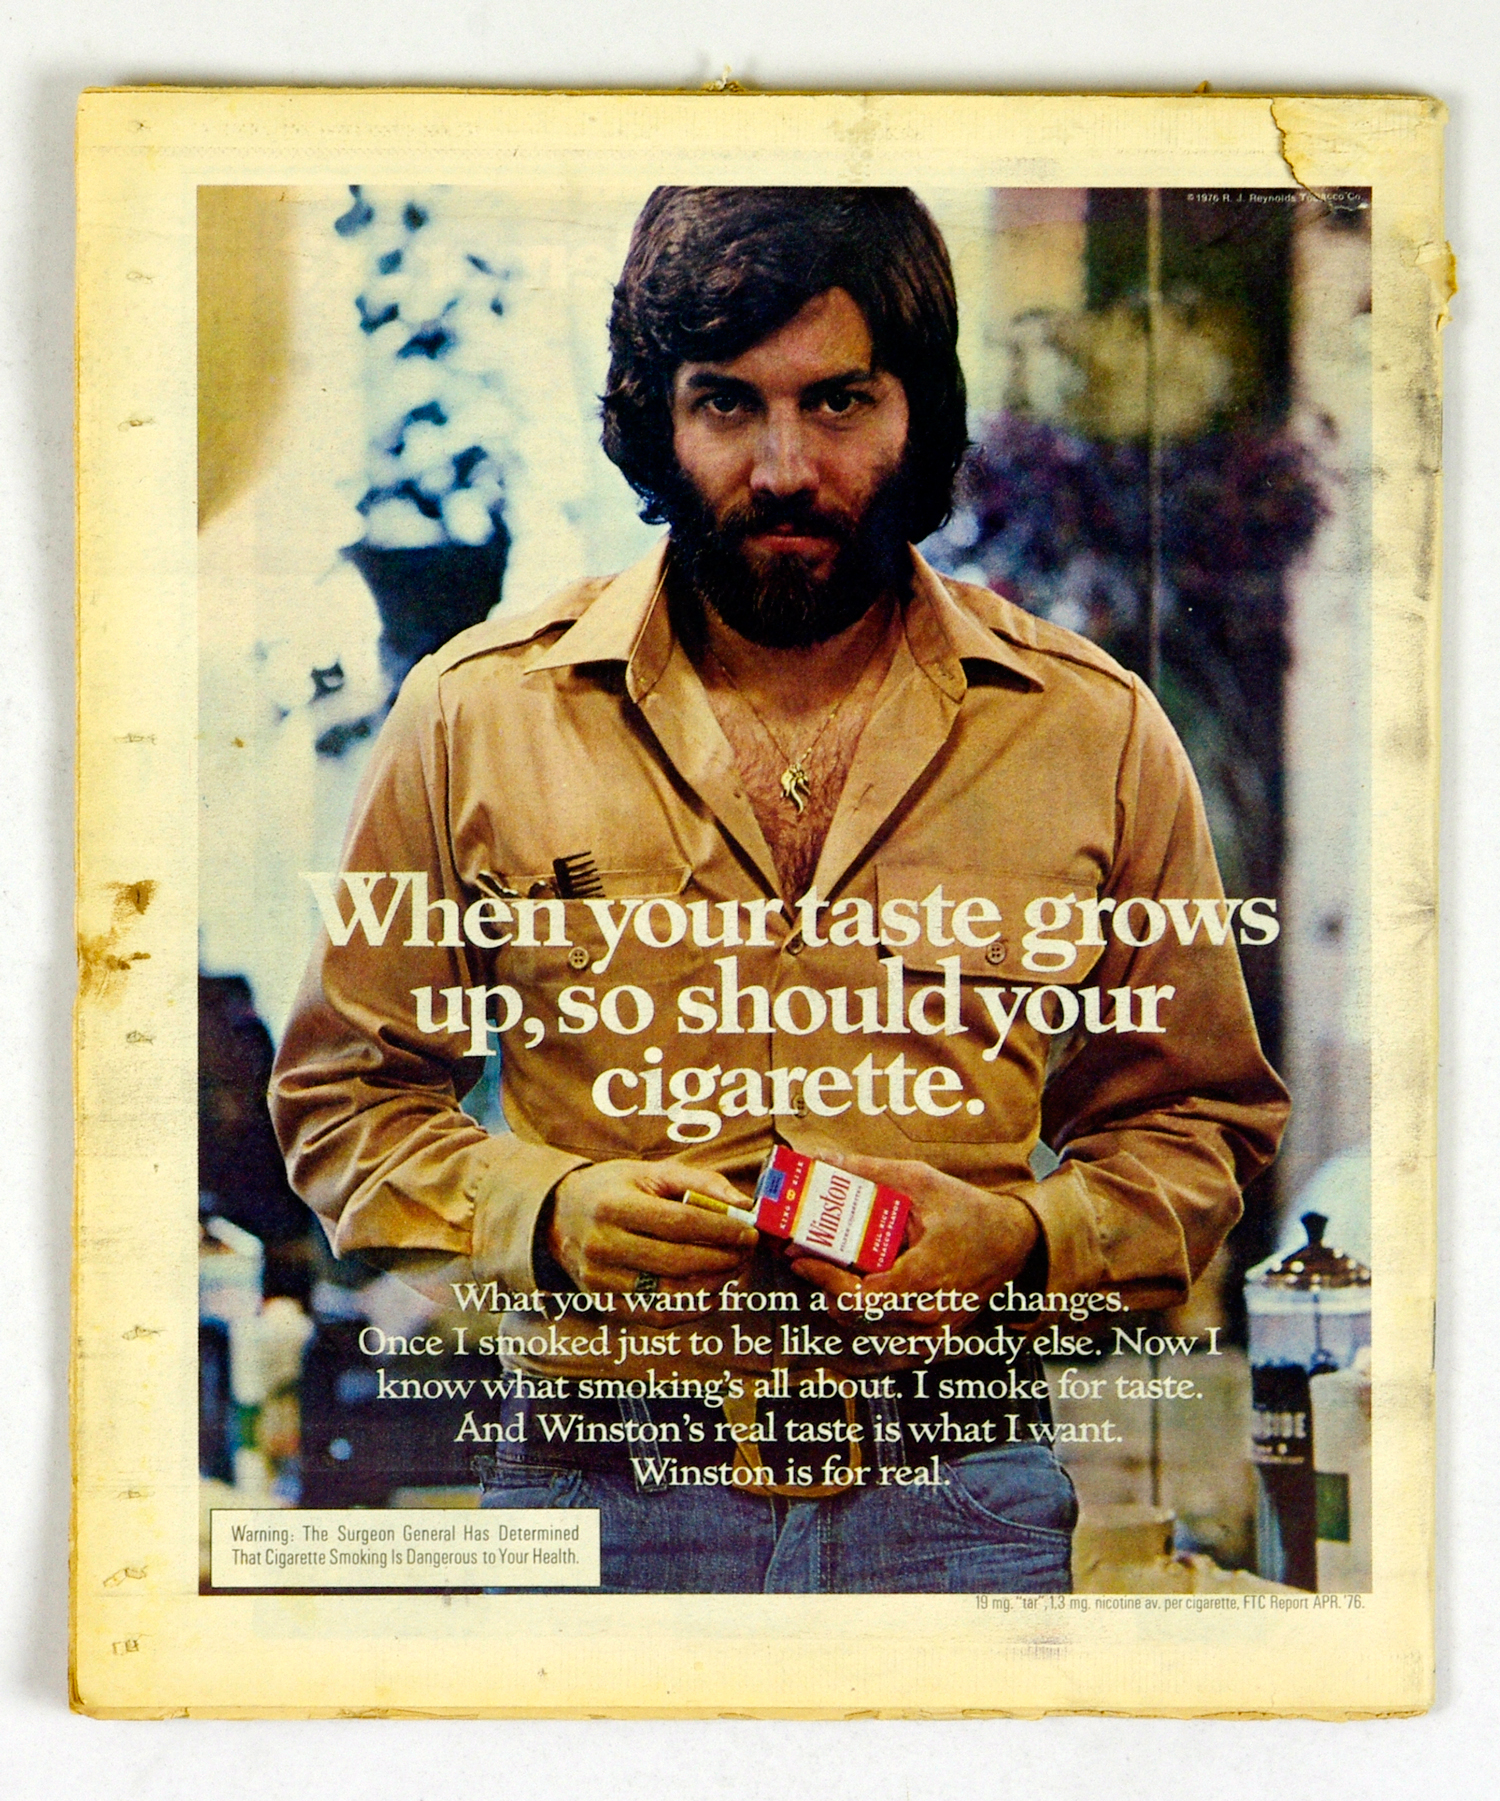 Rolling Stone Magazine Back Issue 1977 Jan 27 No. 231 Jeff Bridges 